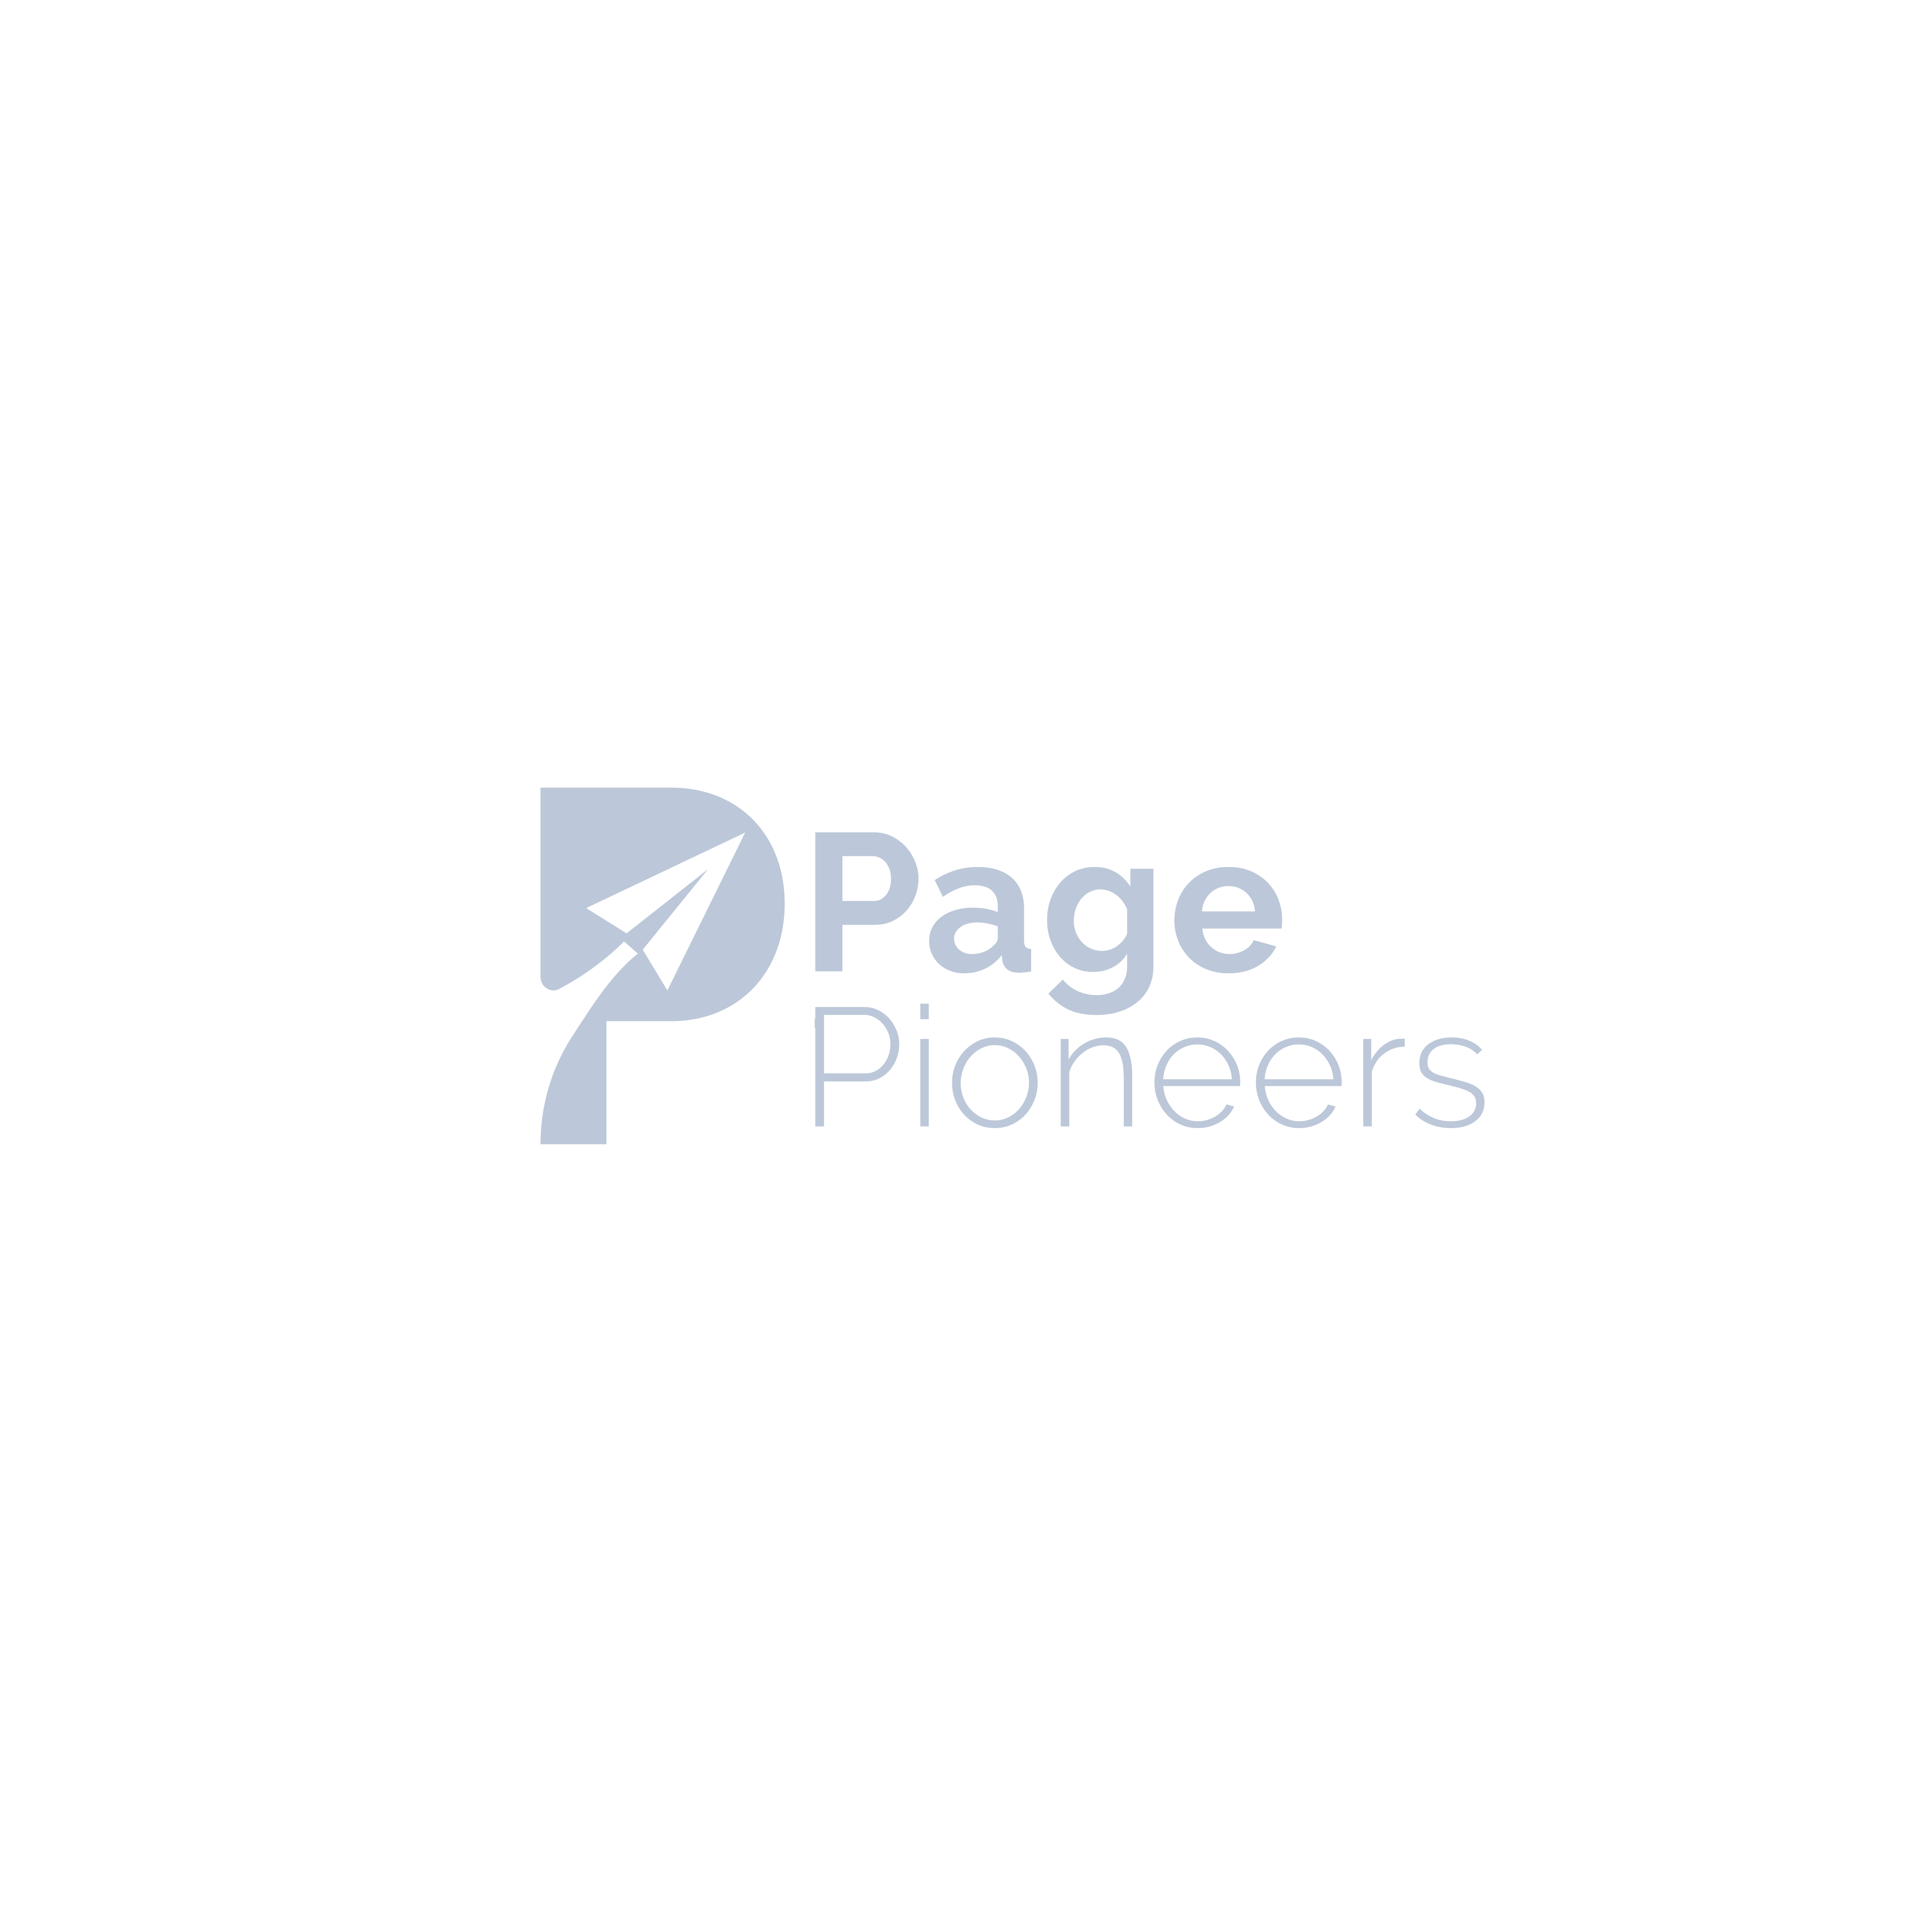 WebPagePioneers